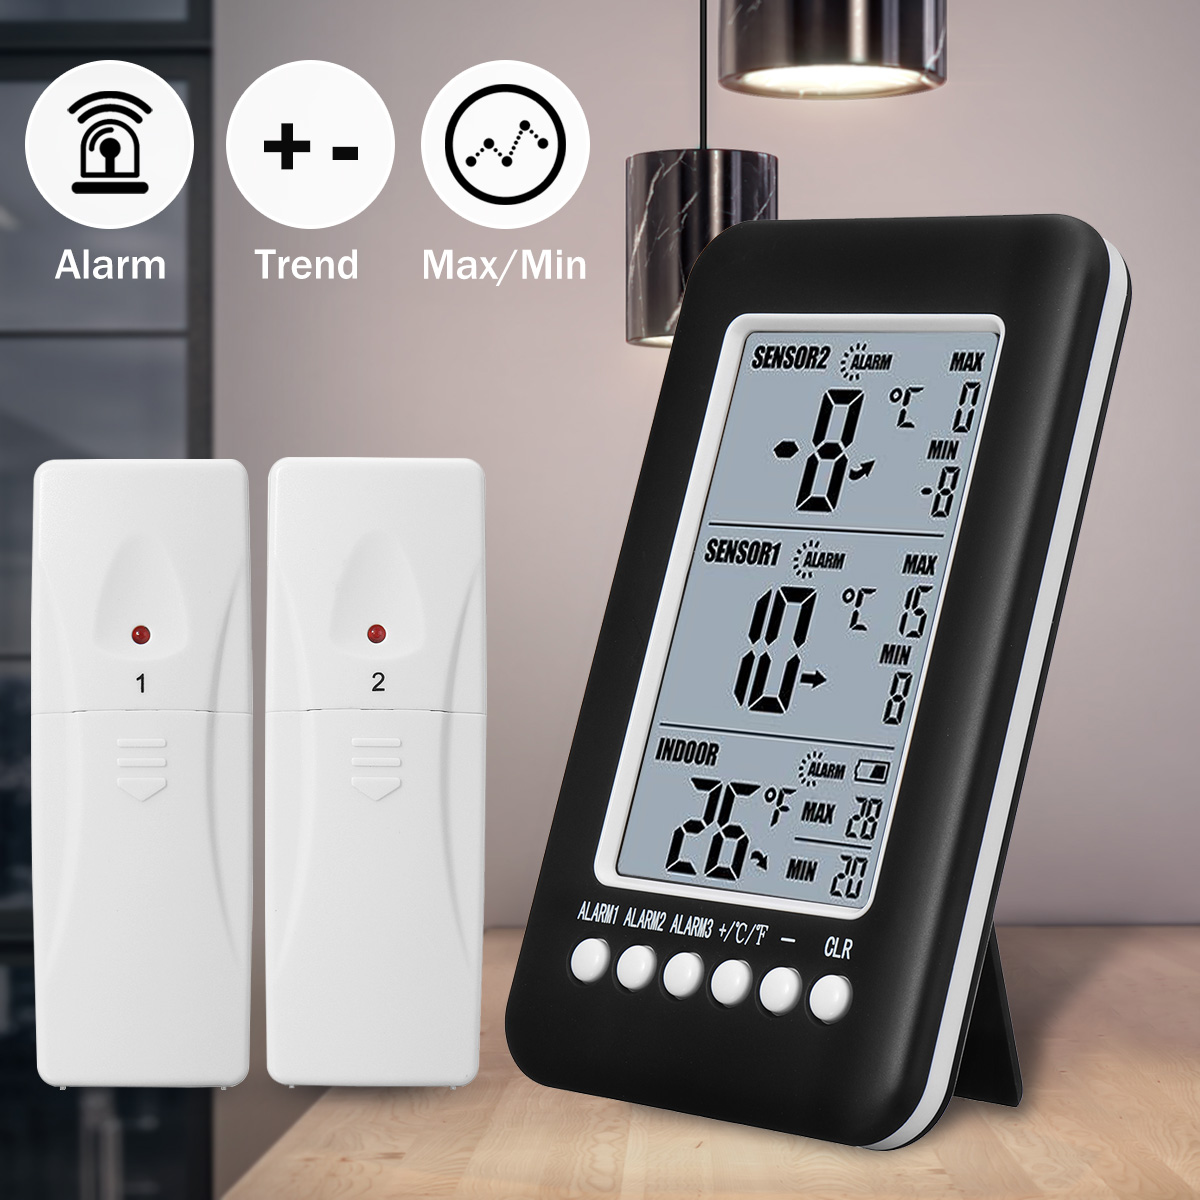 2-Sensor-Wireless-Freezer-Alarm-Digital-Thermometer-LCD-screen-Indoor-Outdoor-1317889-1